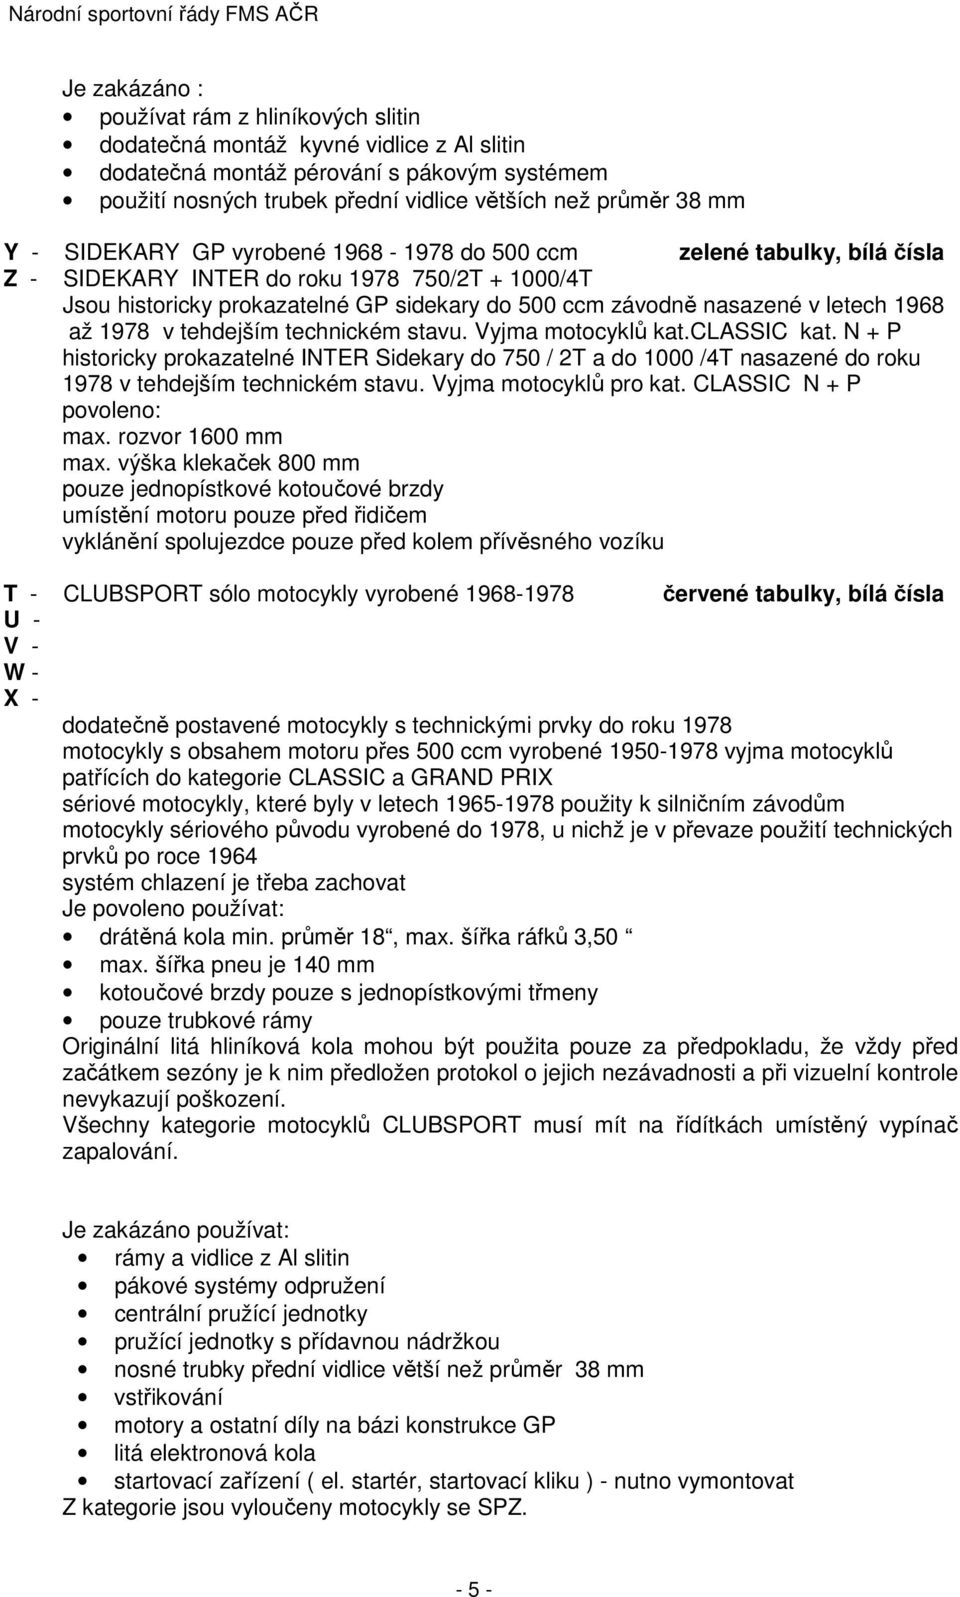 Národní sportovní řády FMS AČR - PDF Stažení zdarma